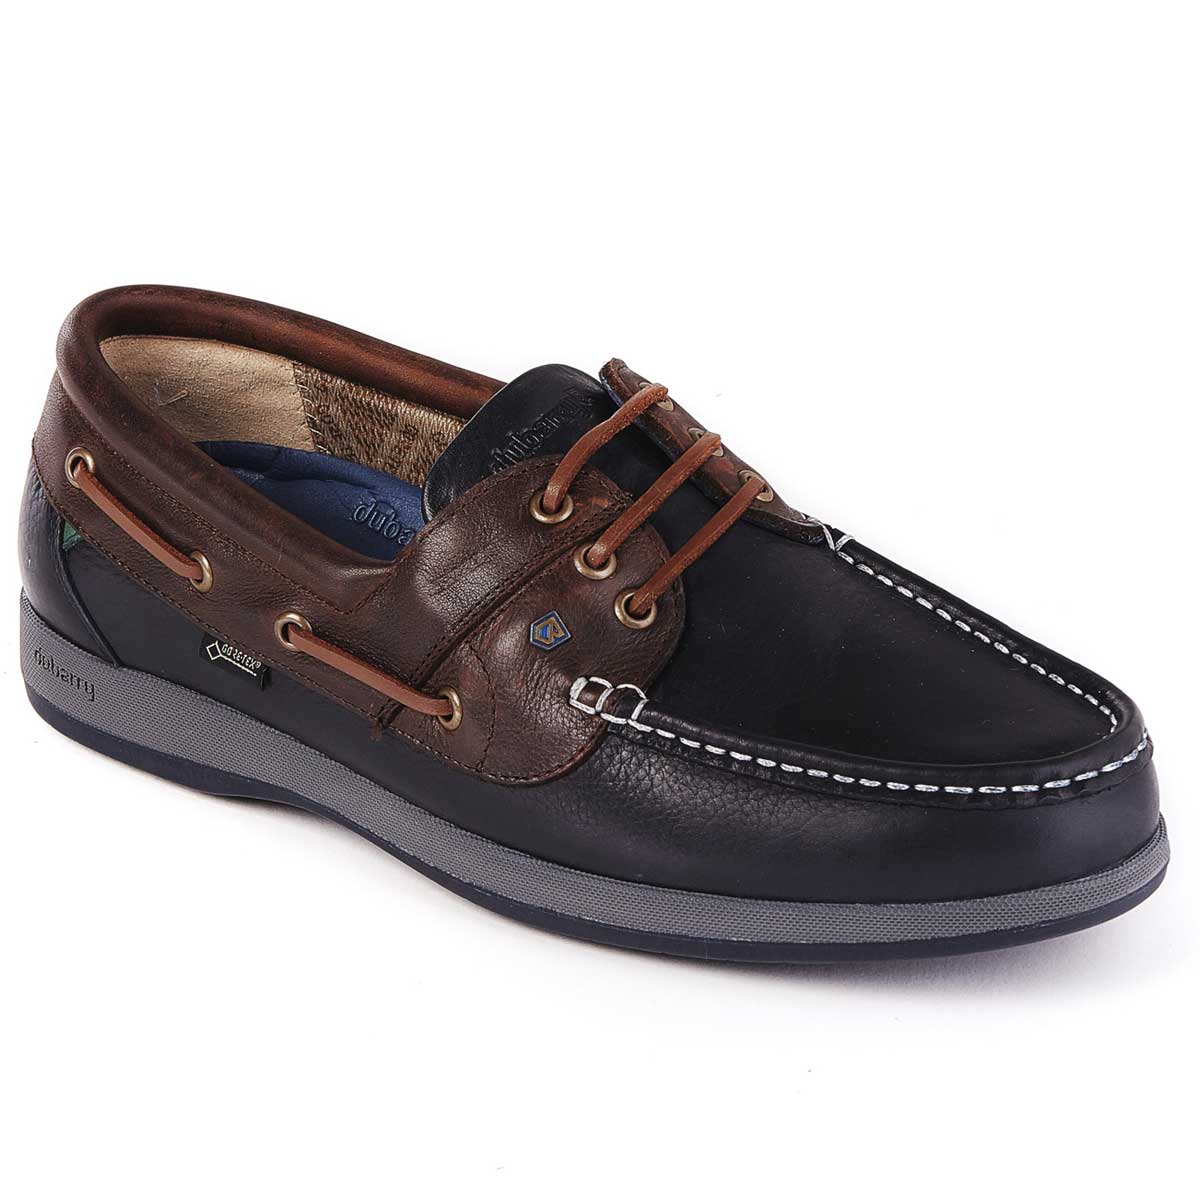 DUBARRY Deck Shoes - Men's Mariner Gore-Tex - Navy & Brown